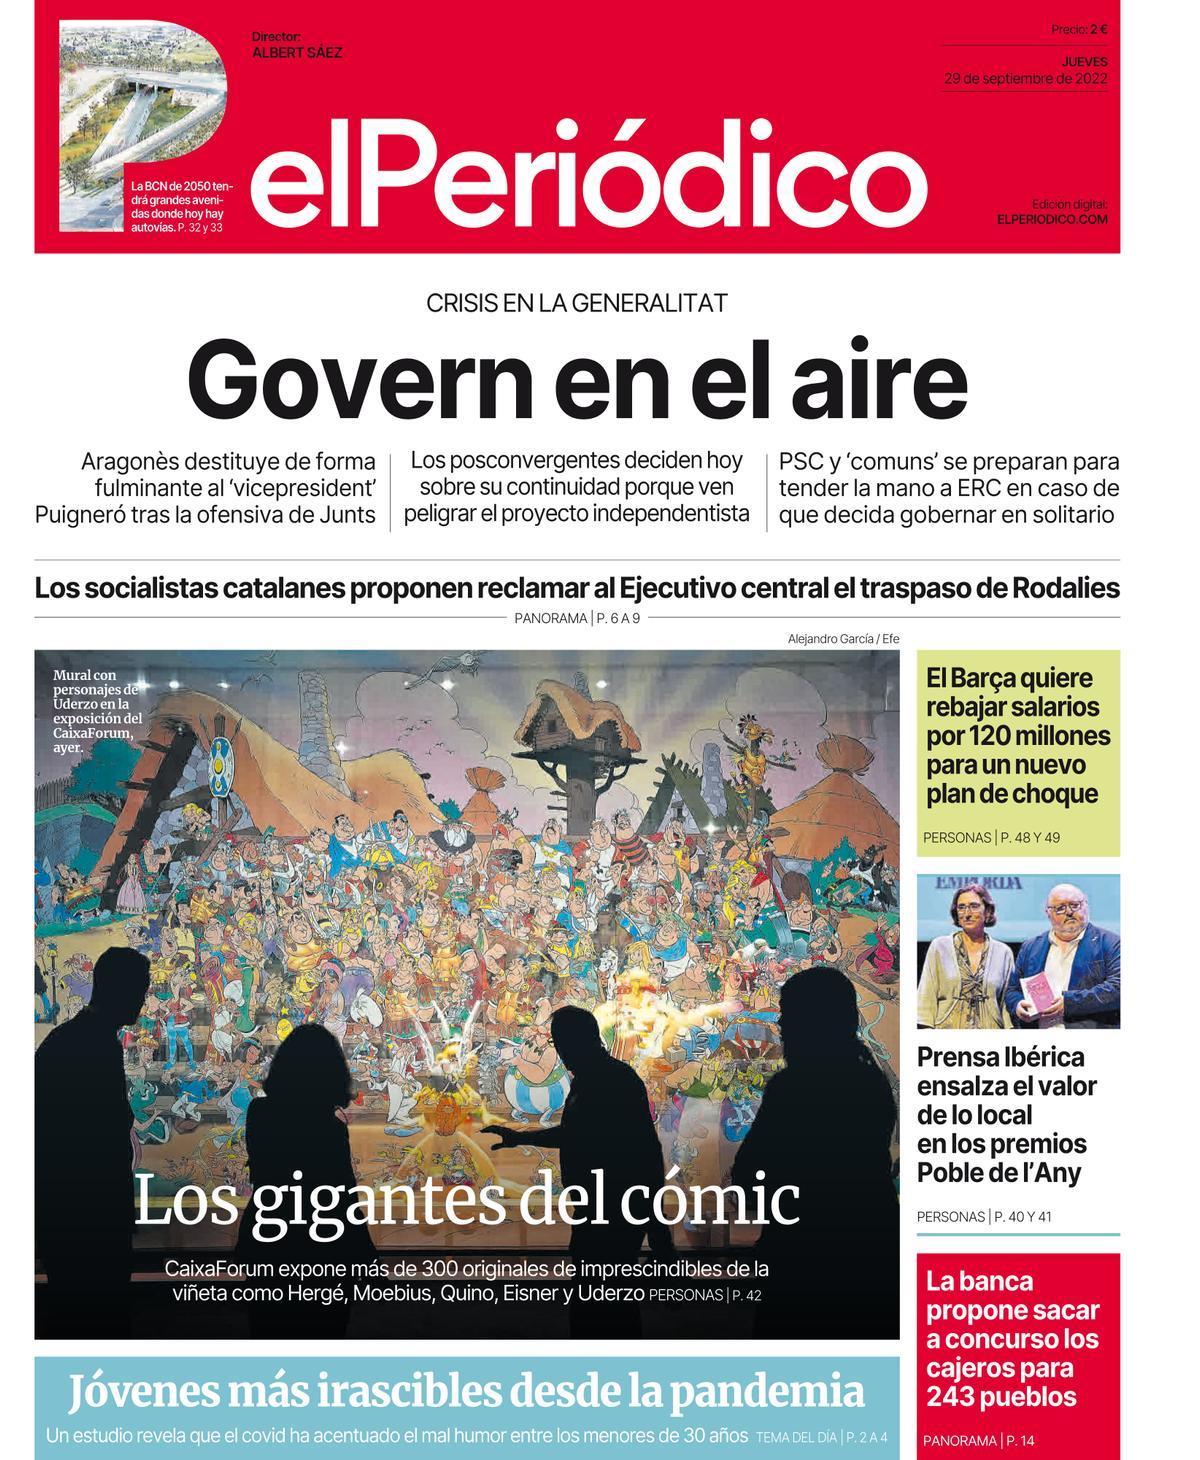 La portada de EL PERIÓDICO del 29 de septiembre de 2022